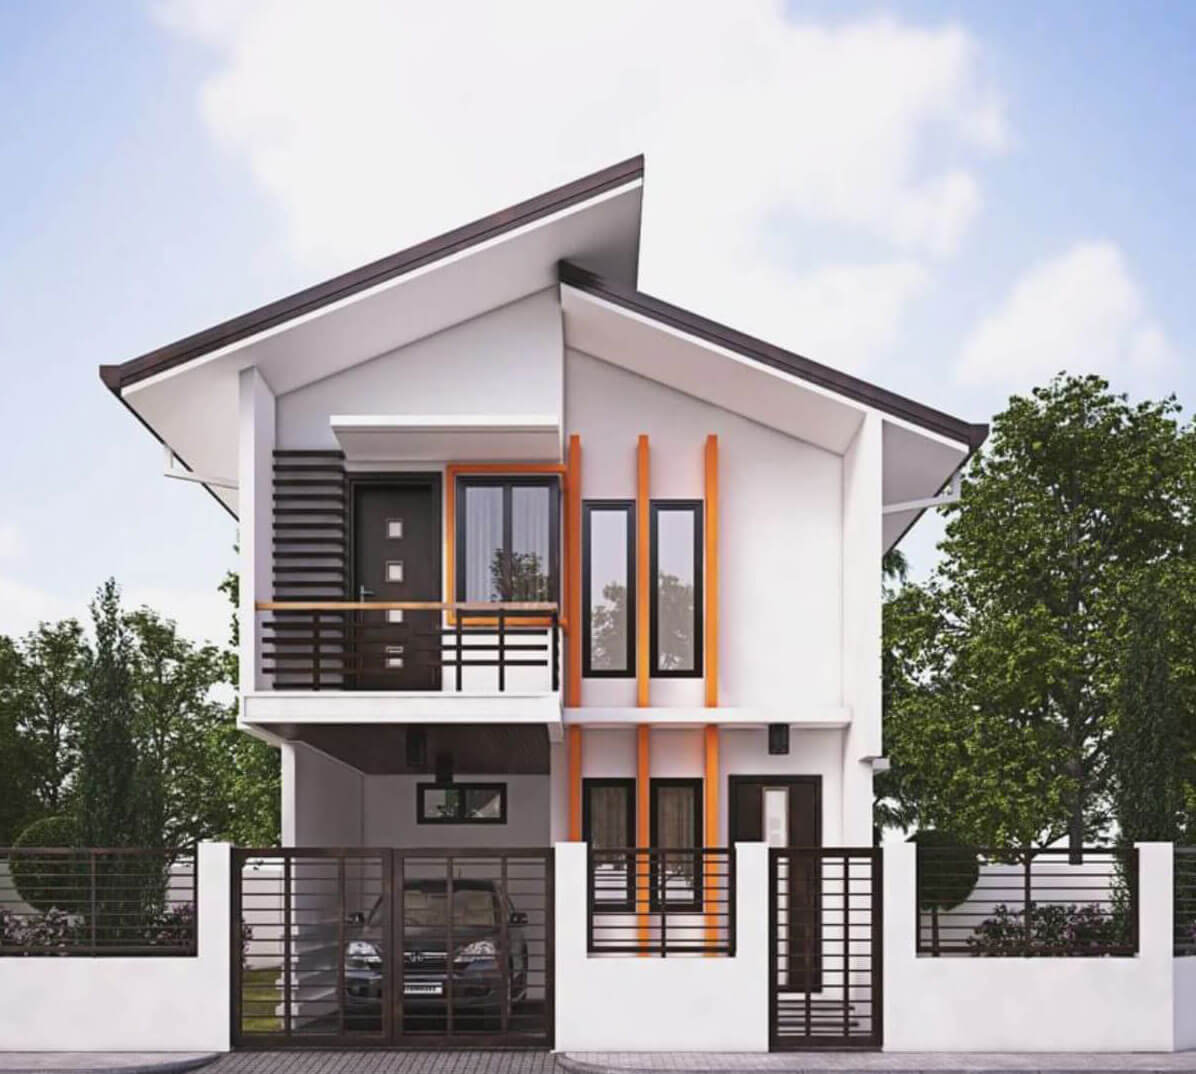 Kiến trúc nhà vườn cấp 4 mái lệch 4x6 hiện đại  xây nhà trọn gói giá rẻ  Bình Thuận  Xây dựng Thuận Nguyên